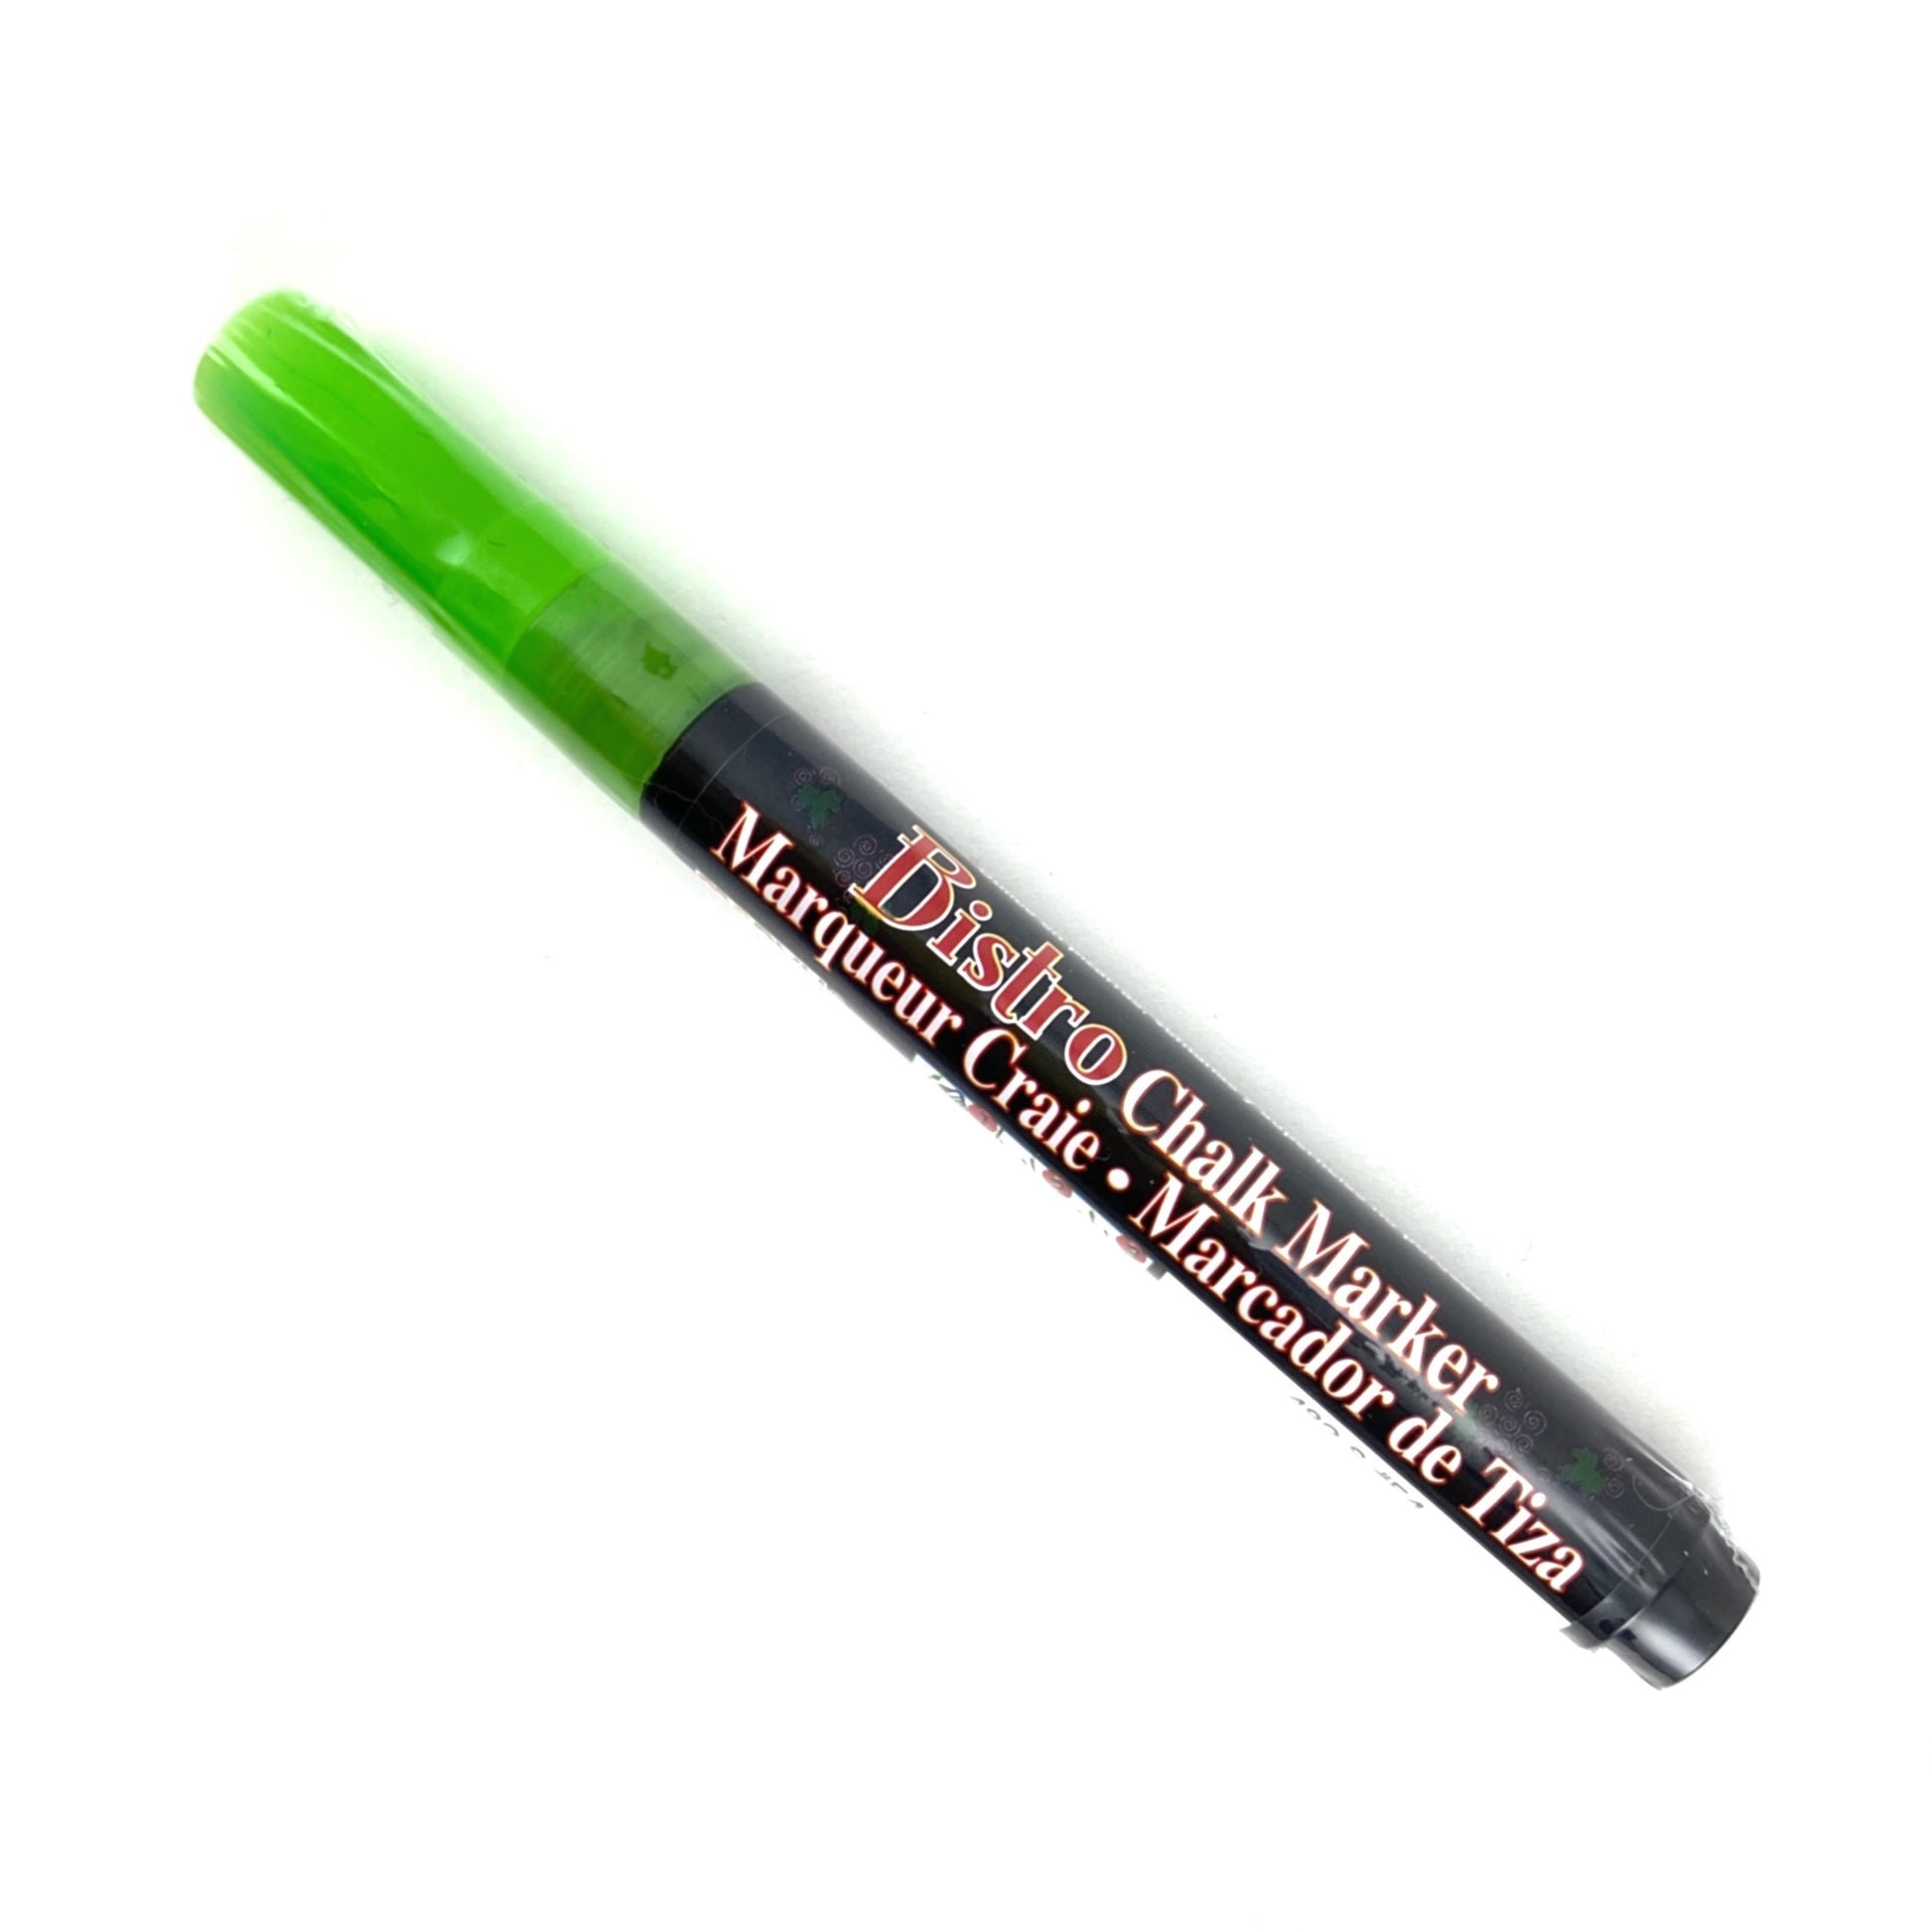 Bistro Chalk Marker - Fine (3mm) - Fluorescent Green by Marvy Uchida - K. A. Artist Shop